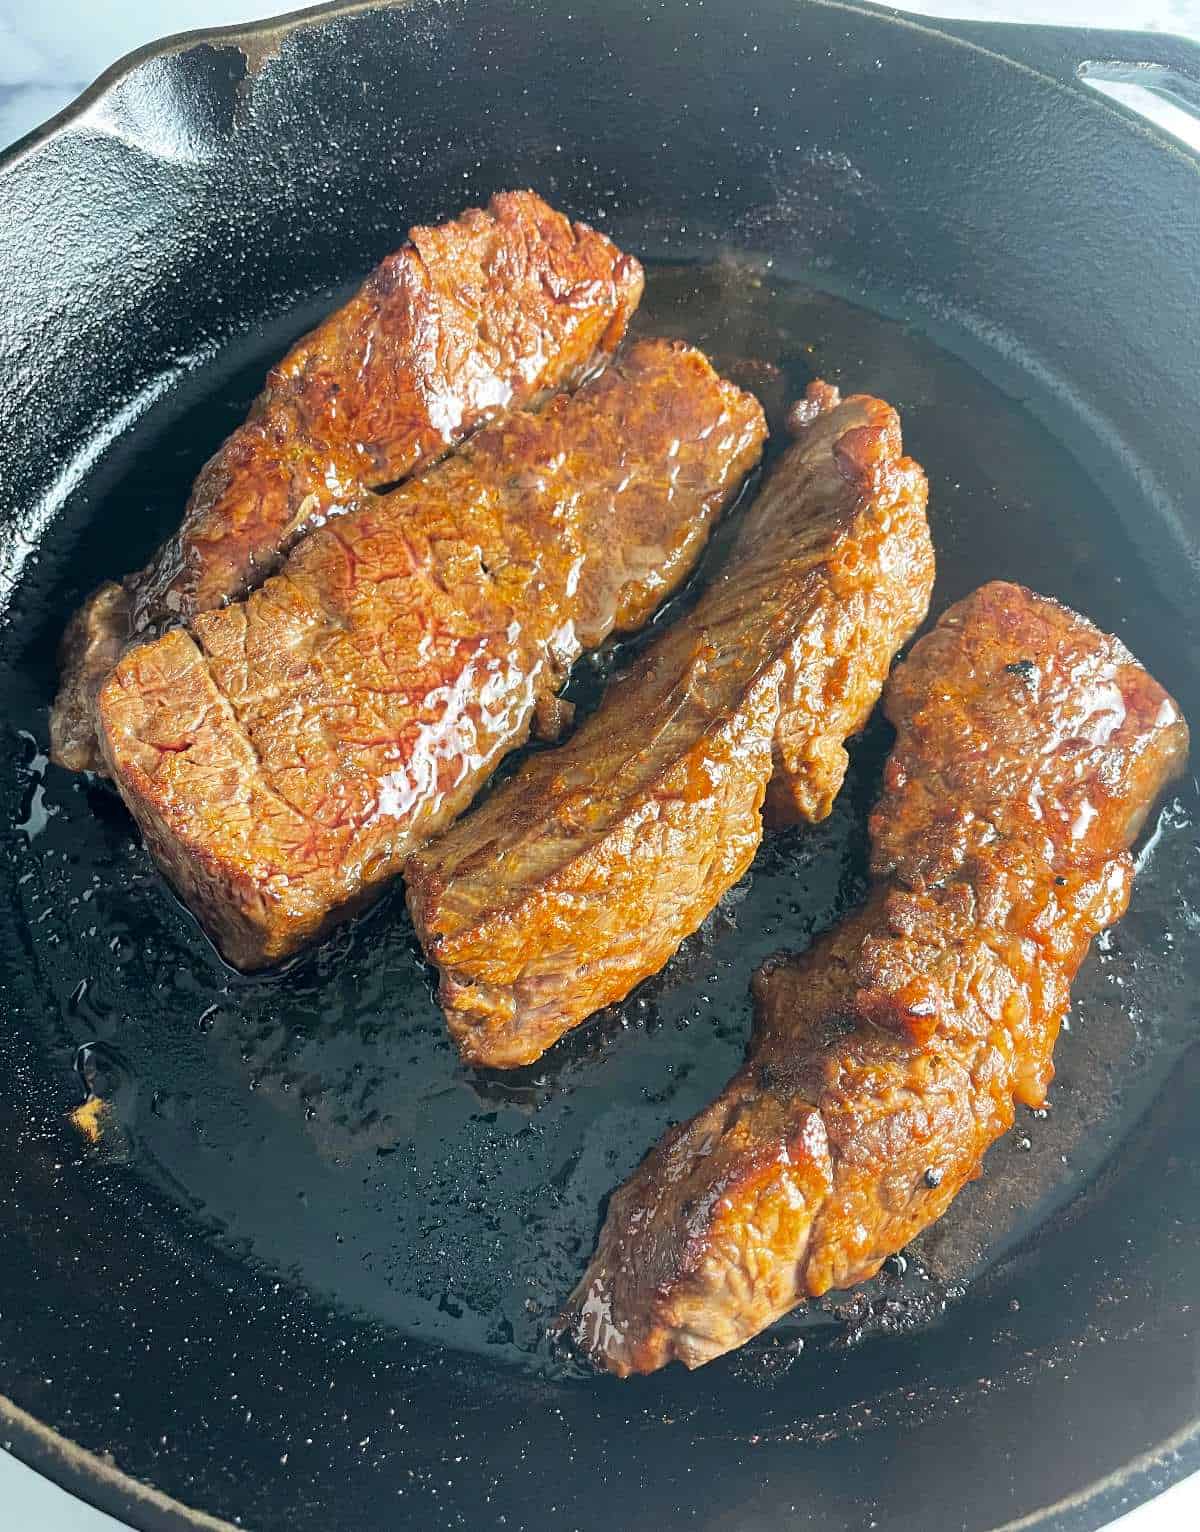 Oven baked steak tips in a black skillet.